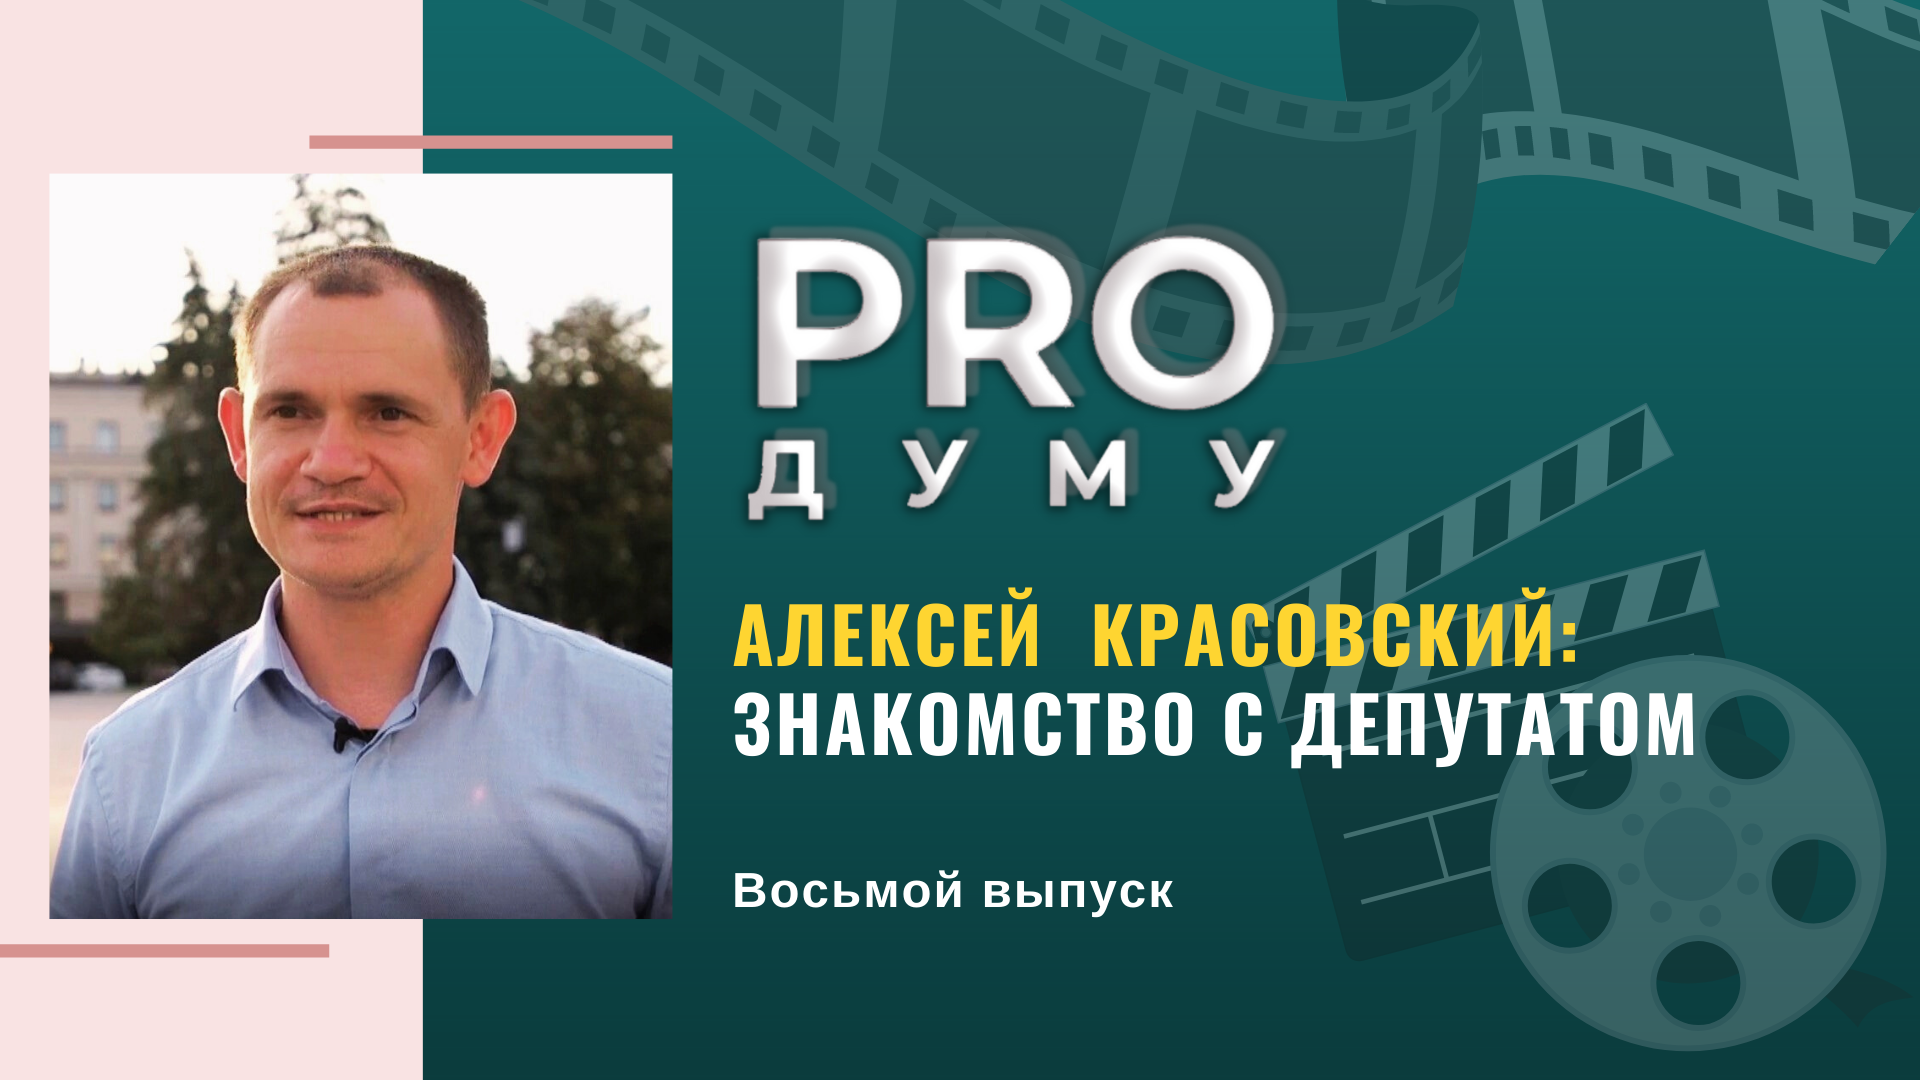 PRO Думу: бережливые технологии в Думе и главные принципы в жизни депутата Алексея Красовского